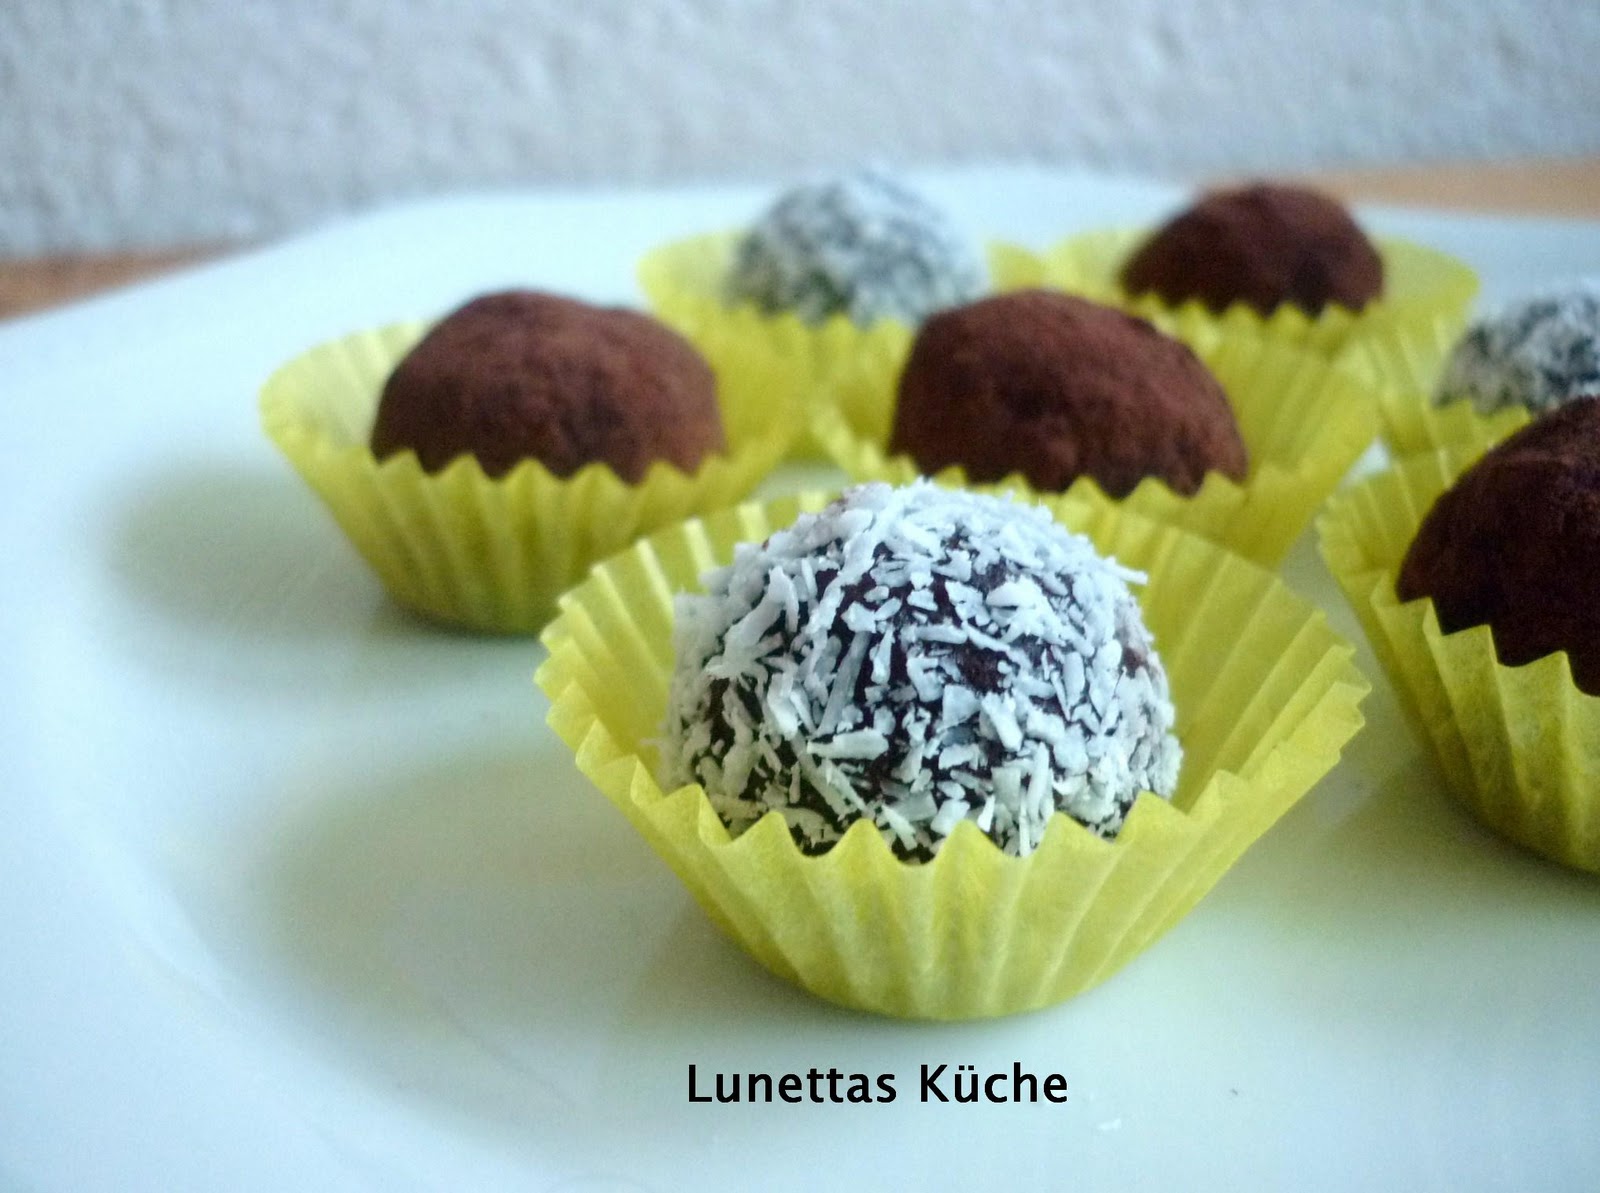 Lunettas Küche: Rumkugeln aus Kuchen